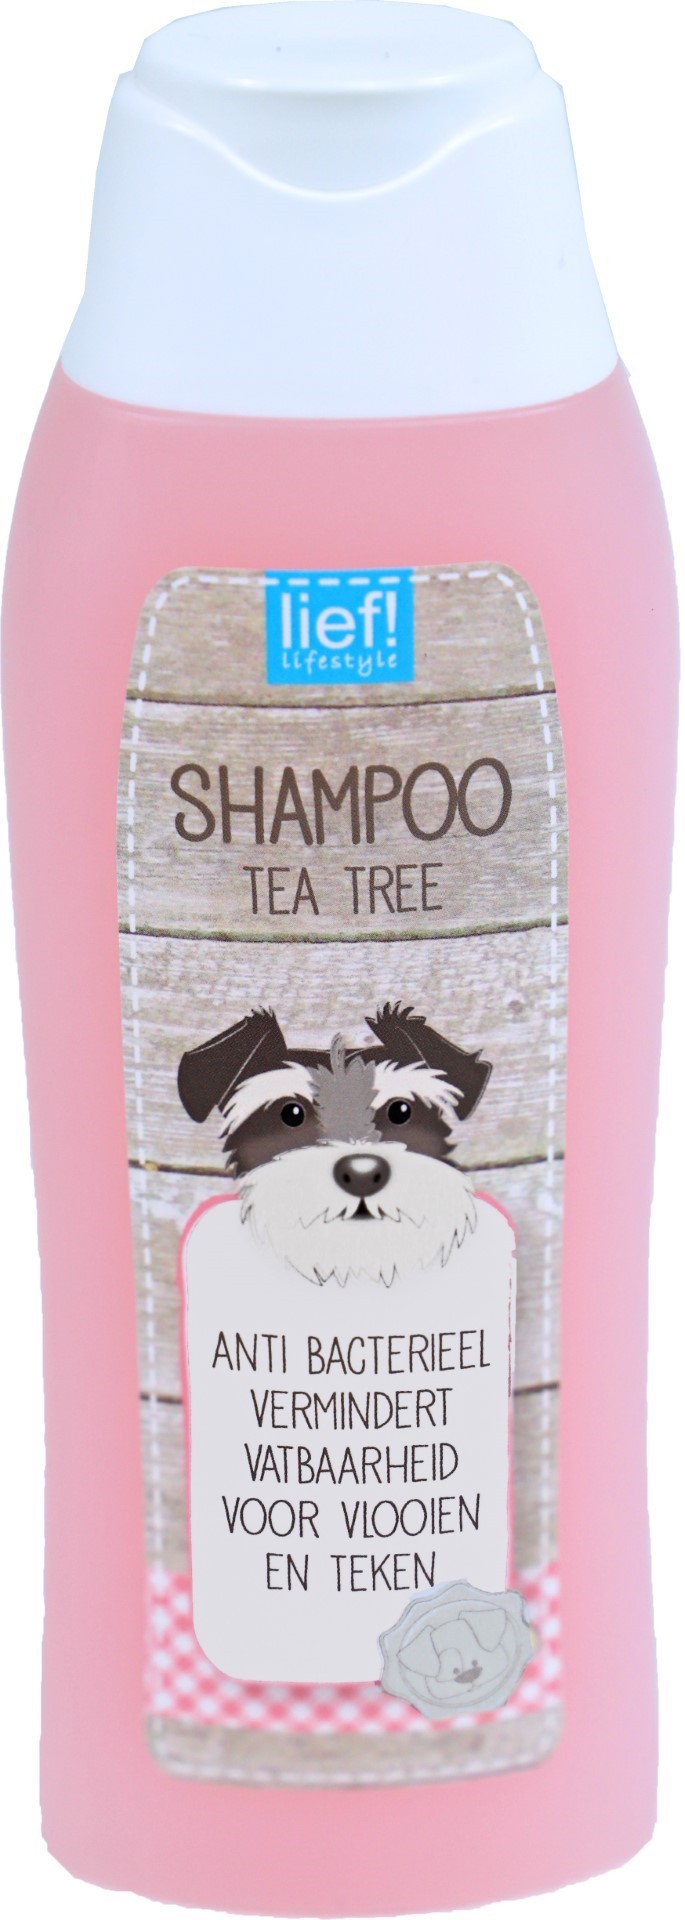 lief! vachtverzorging shampoo tea tree olie 300 ml